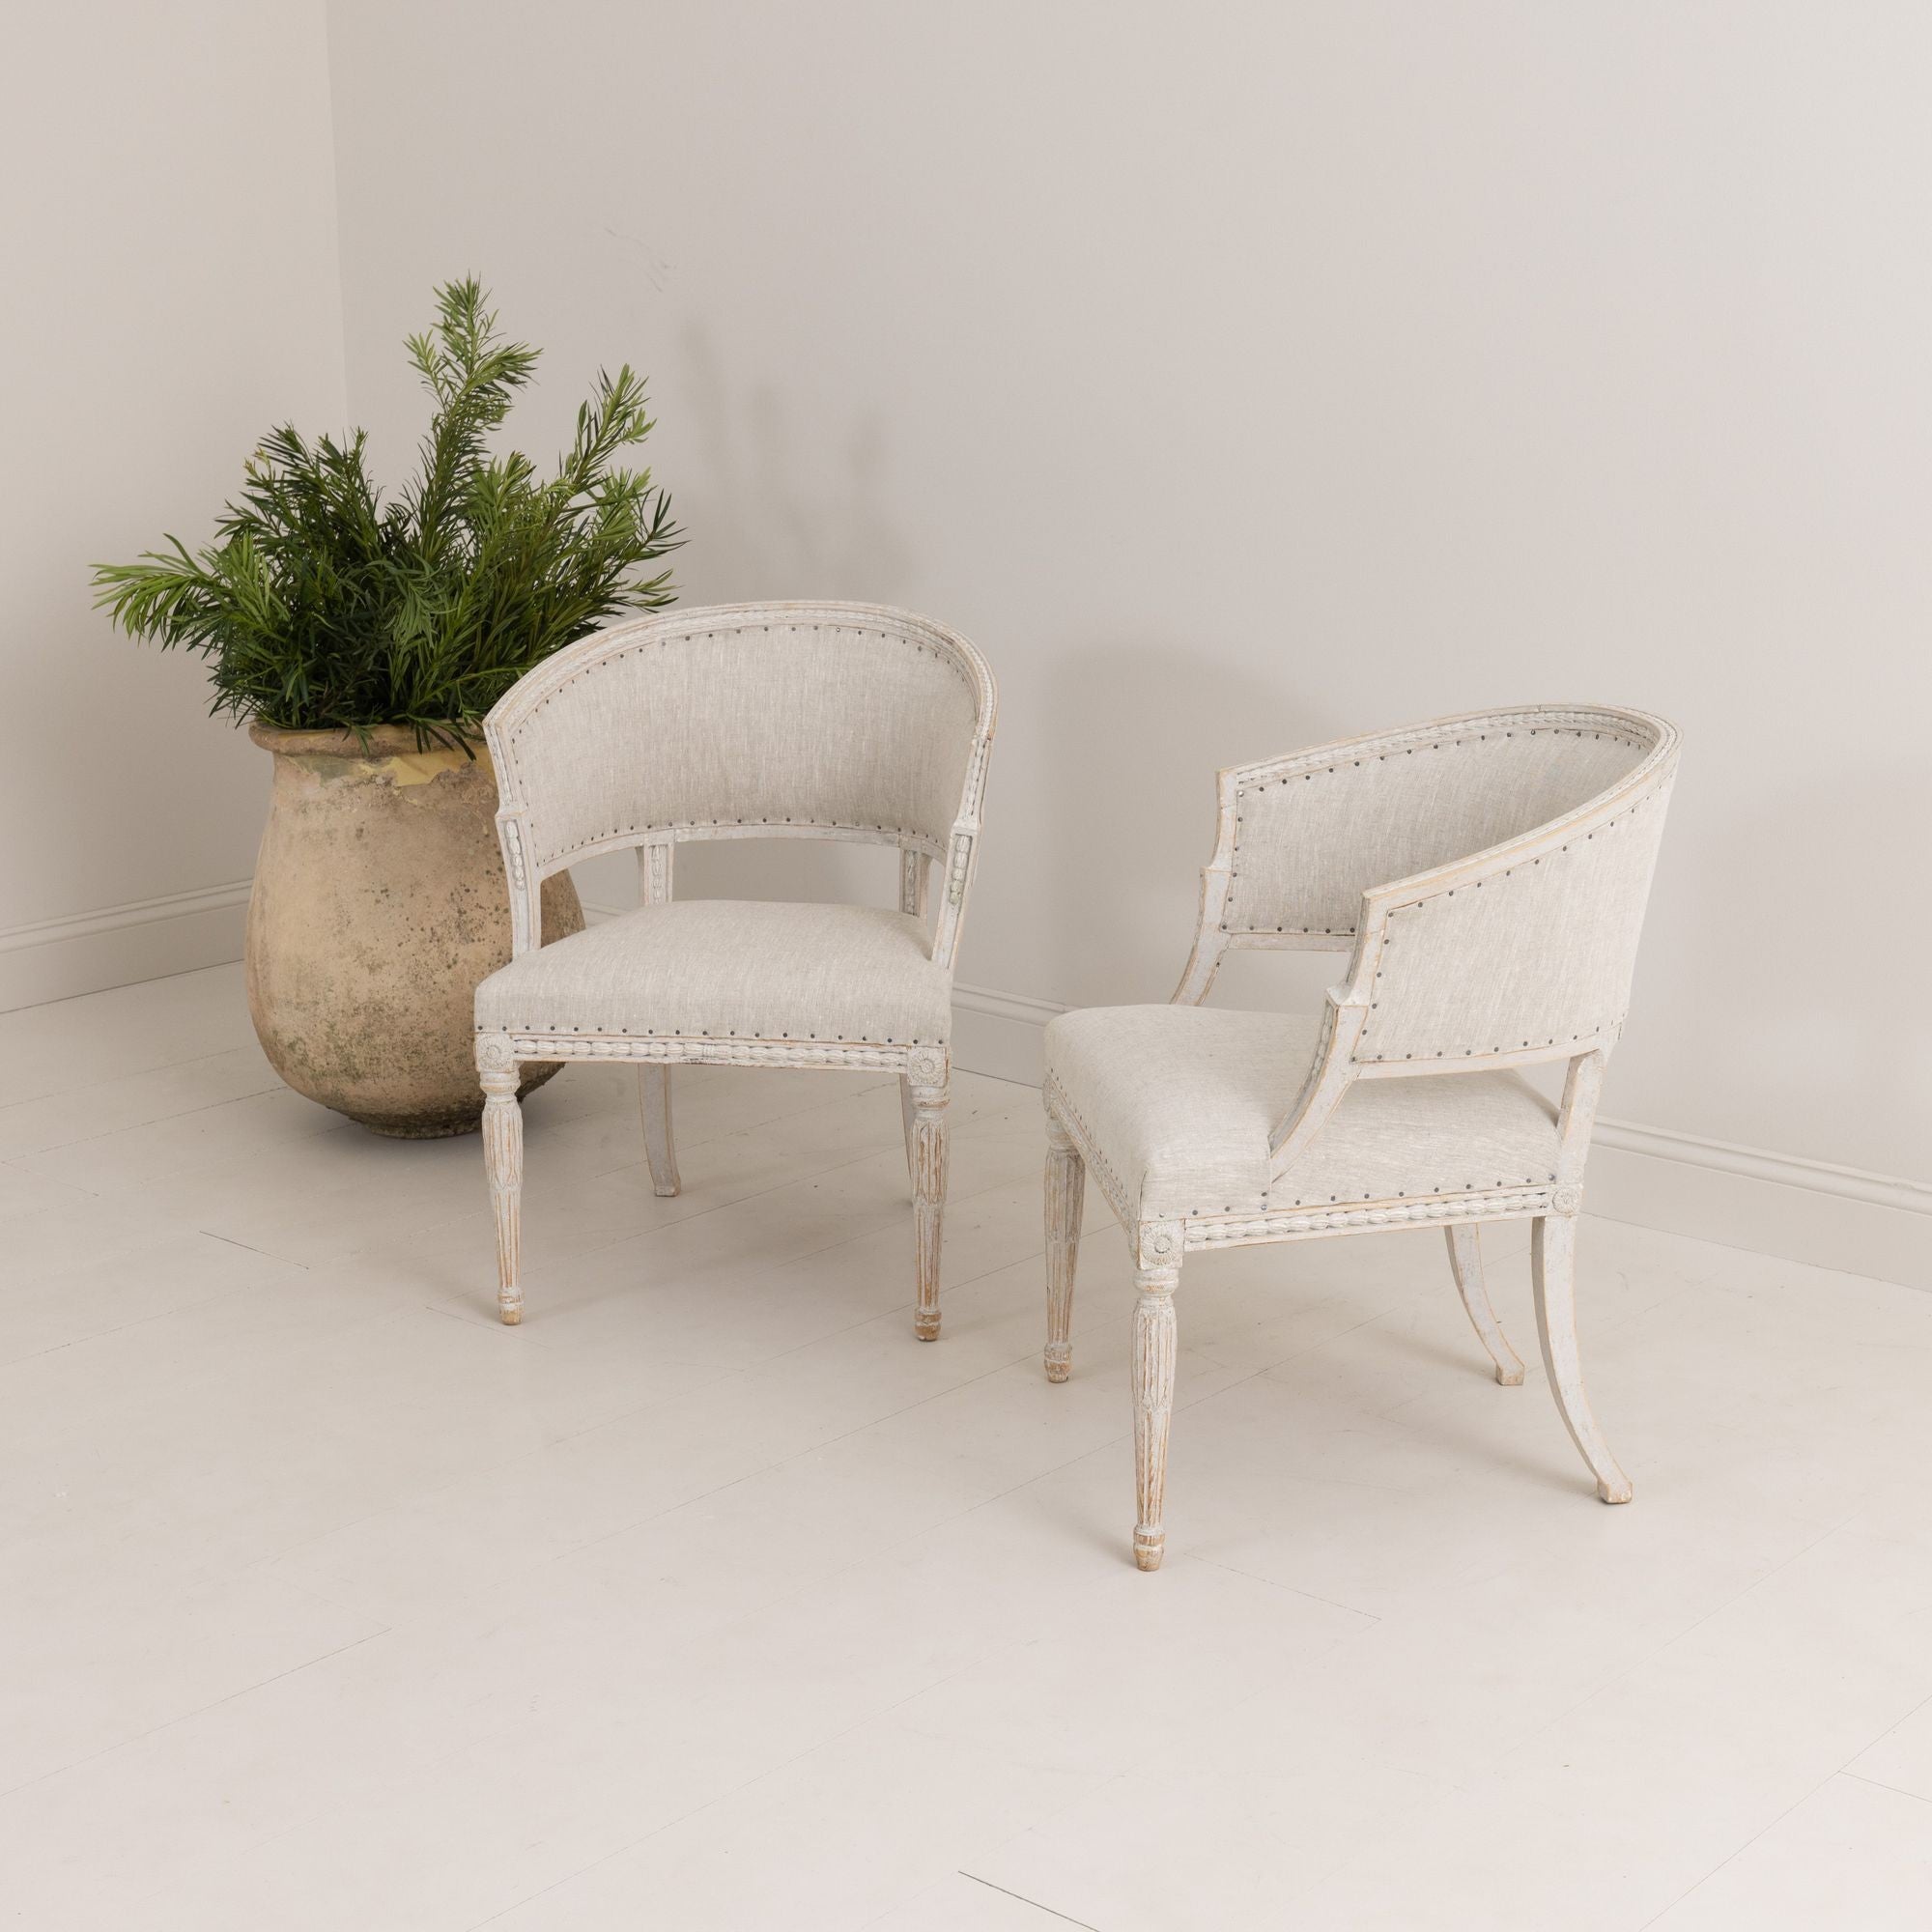 Ein Paar schwedische Stühle mit klassischer Sulla-Tonnen-Rückenlehne im gustavianischen Stil mit dekorativen Details aus Gips, neu mit Leinen gepolstert. Schön geschnitzte Glockenblumen an den Stuhllehnen und am Sitzrahmen, Rosetten an den